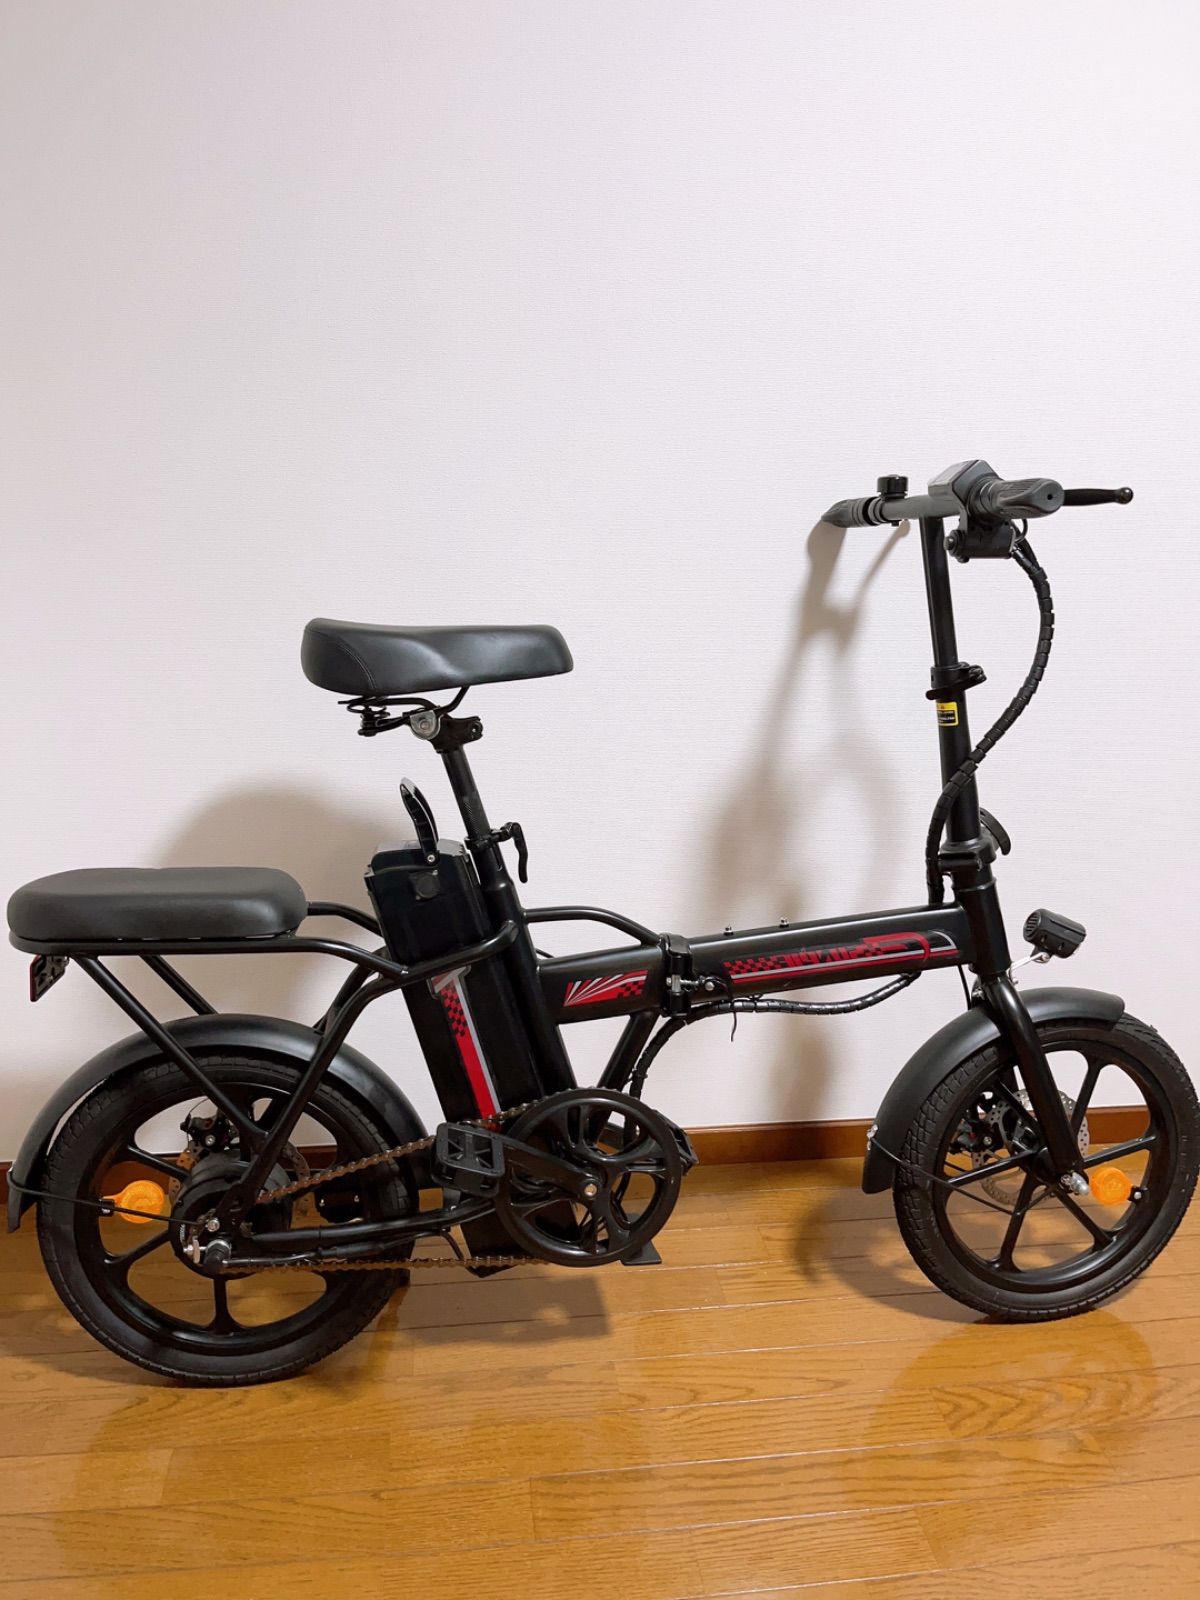 motostar 電動自転車 - 自転車